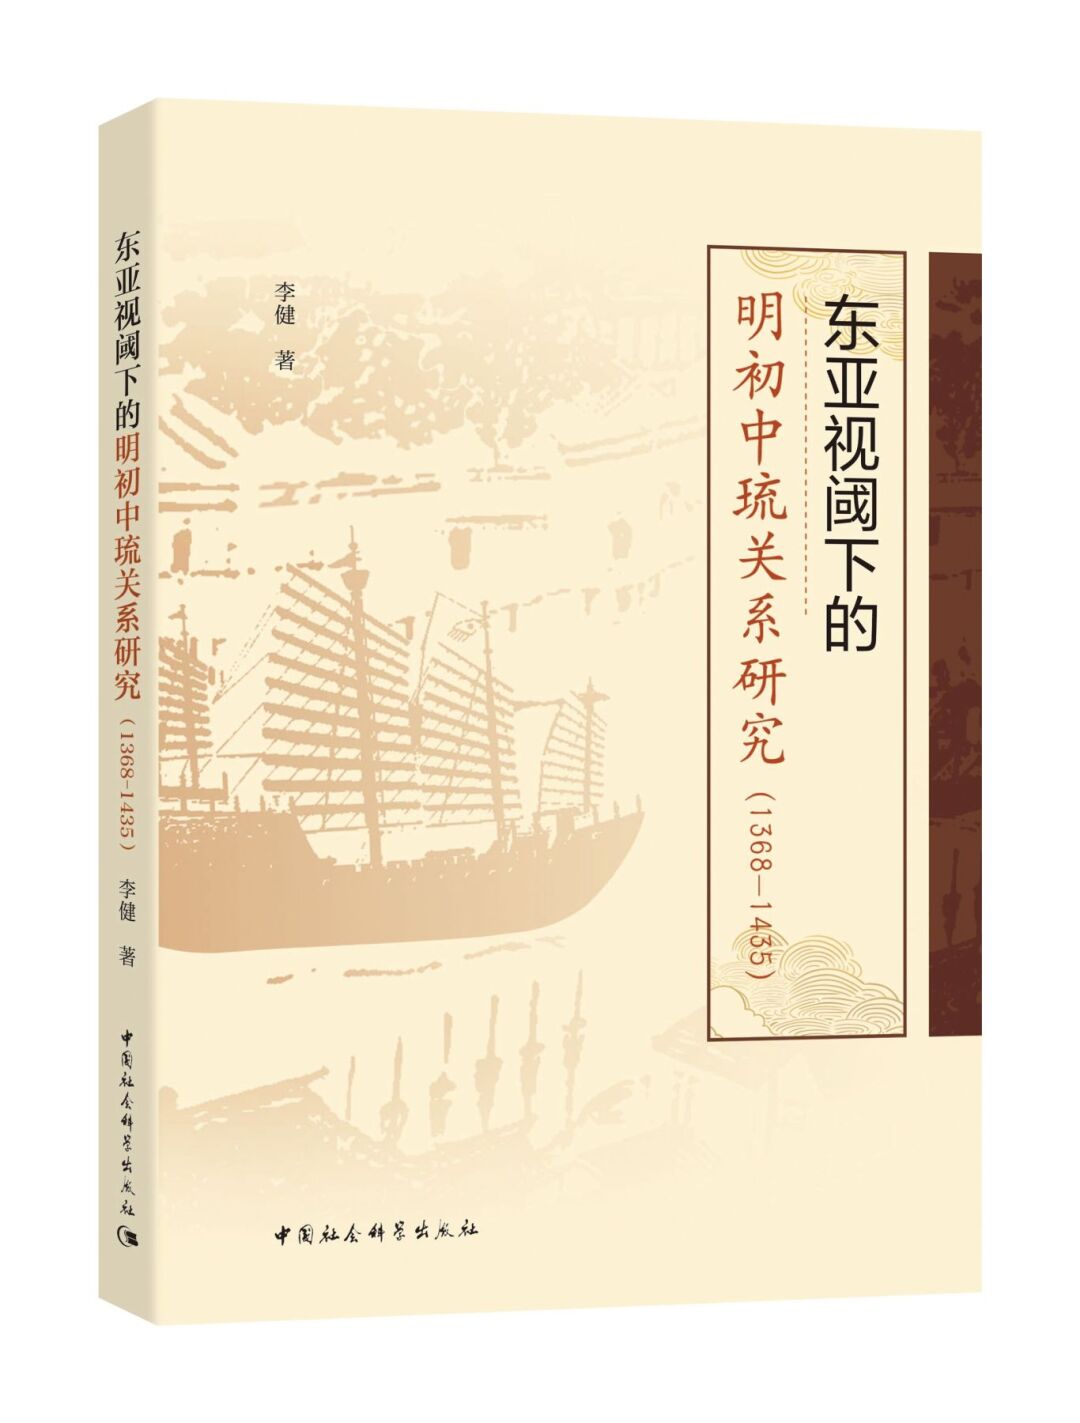 东亚视阈下的明初中琉关系研究（1368-1435）      李健  著  凸显明初东亚国家关系的广泛联动性和区域秩序构建的复杂过程。